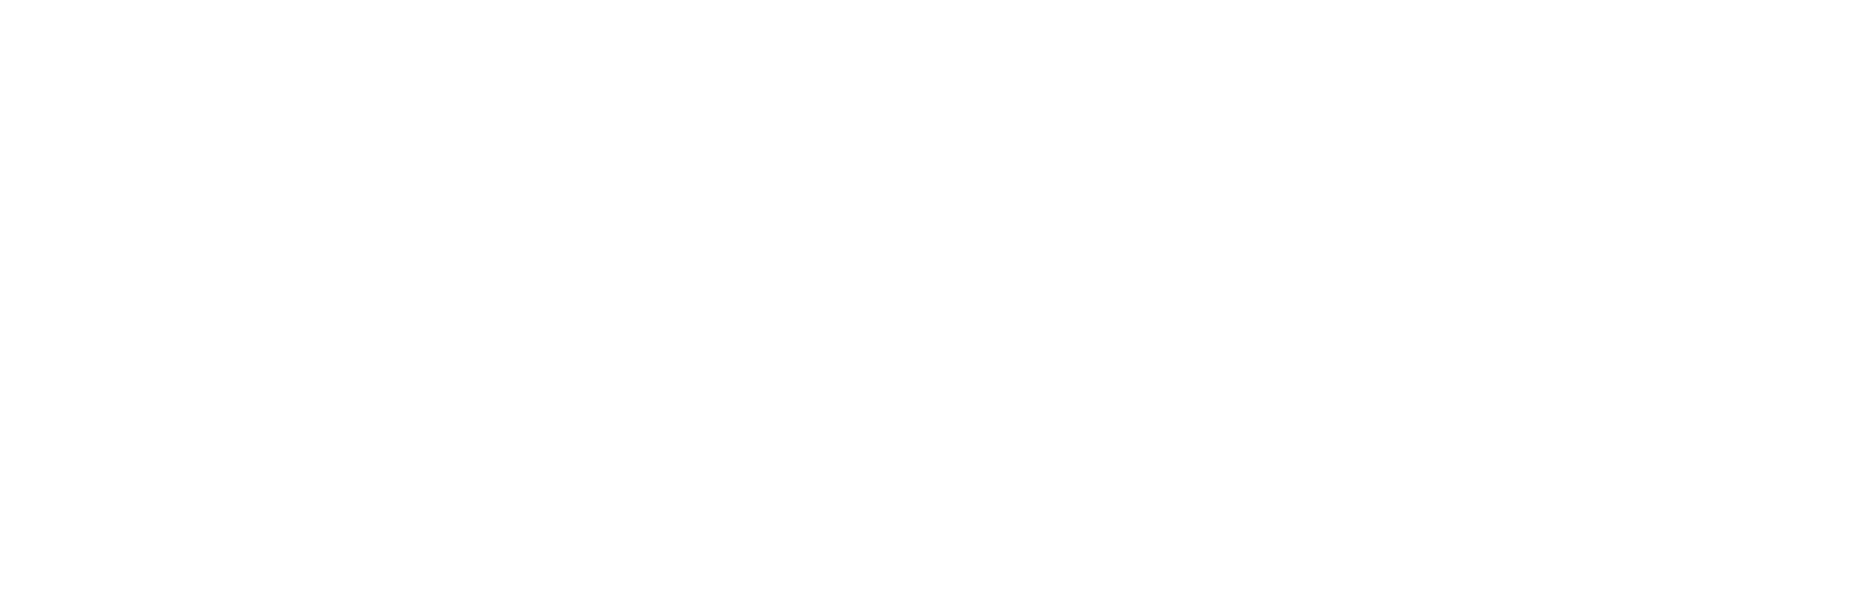 Rovetti Design Studio